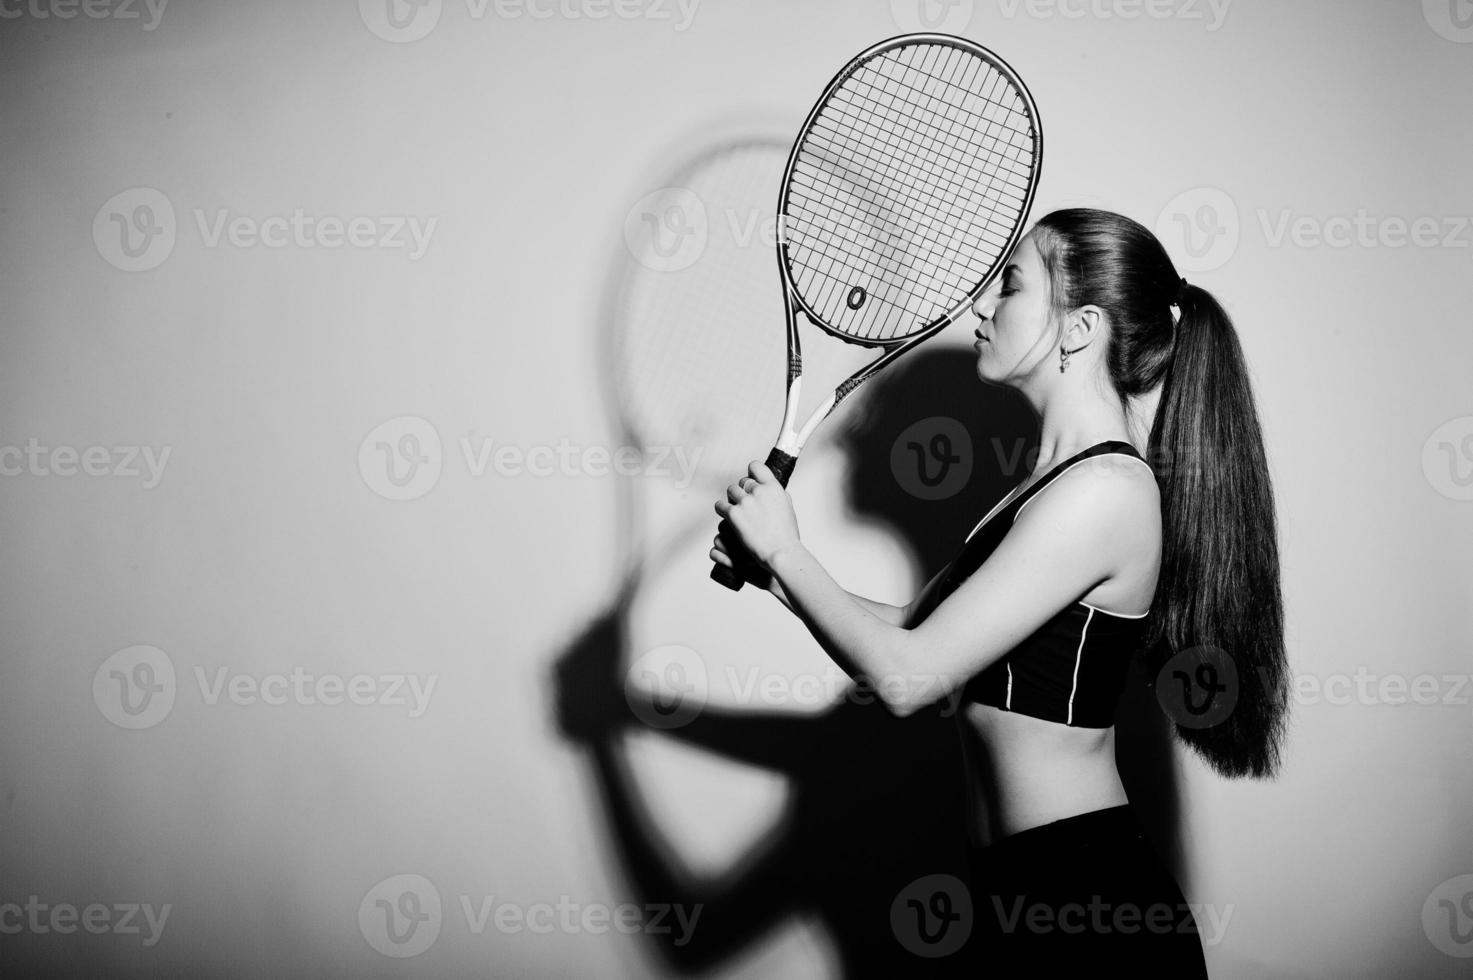 retrato preto e branco do jogador de mulher jovem e bonita em roupas esportivas, segurando a raquete de tênis em pé contra um fundo branco. foto